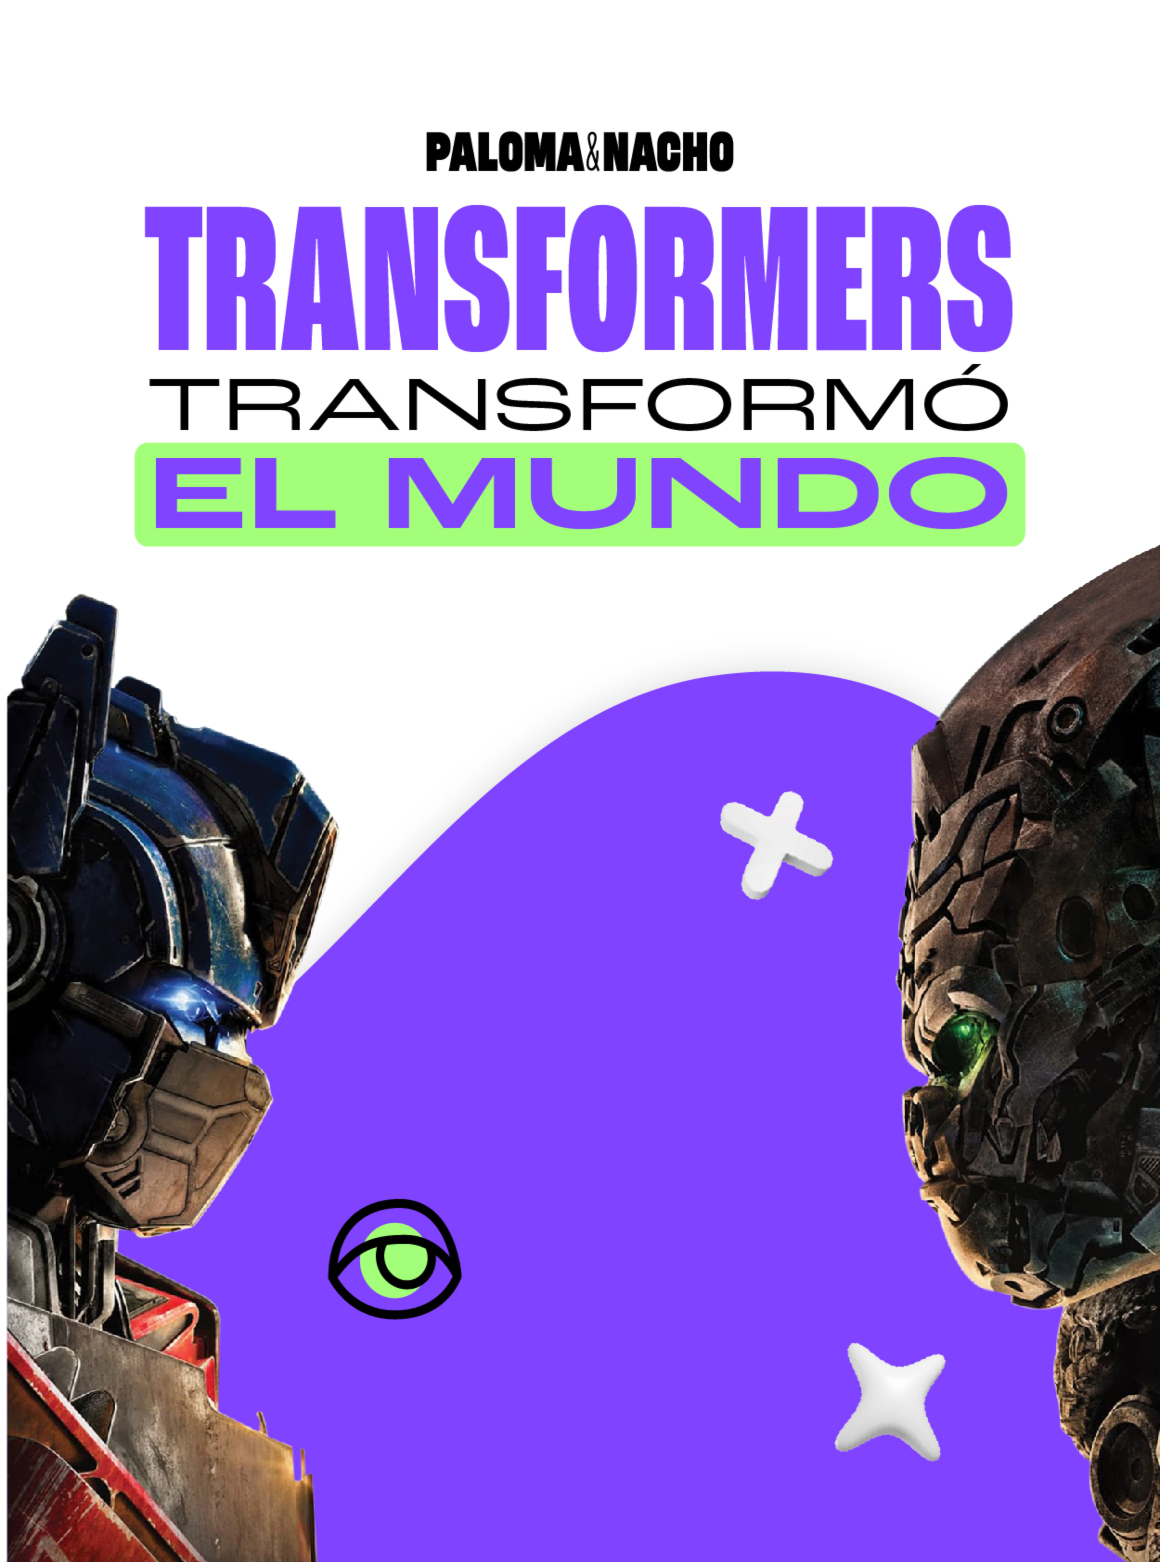 Historia de los Transformers 